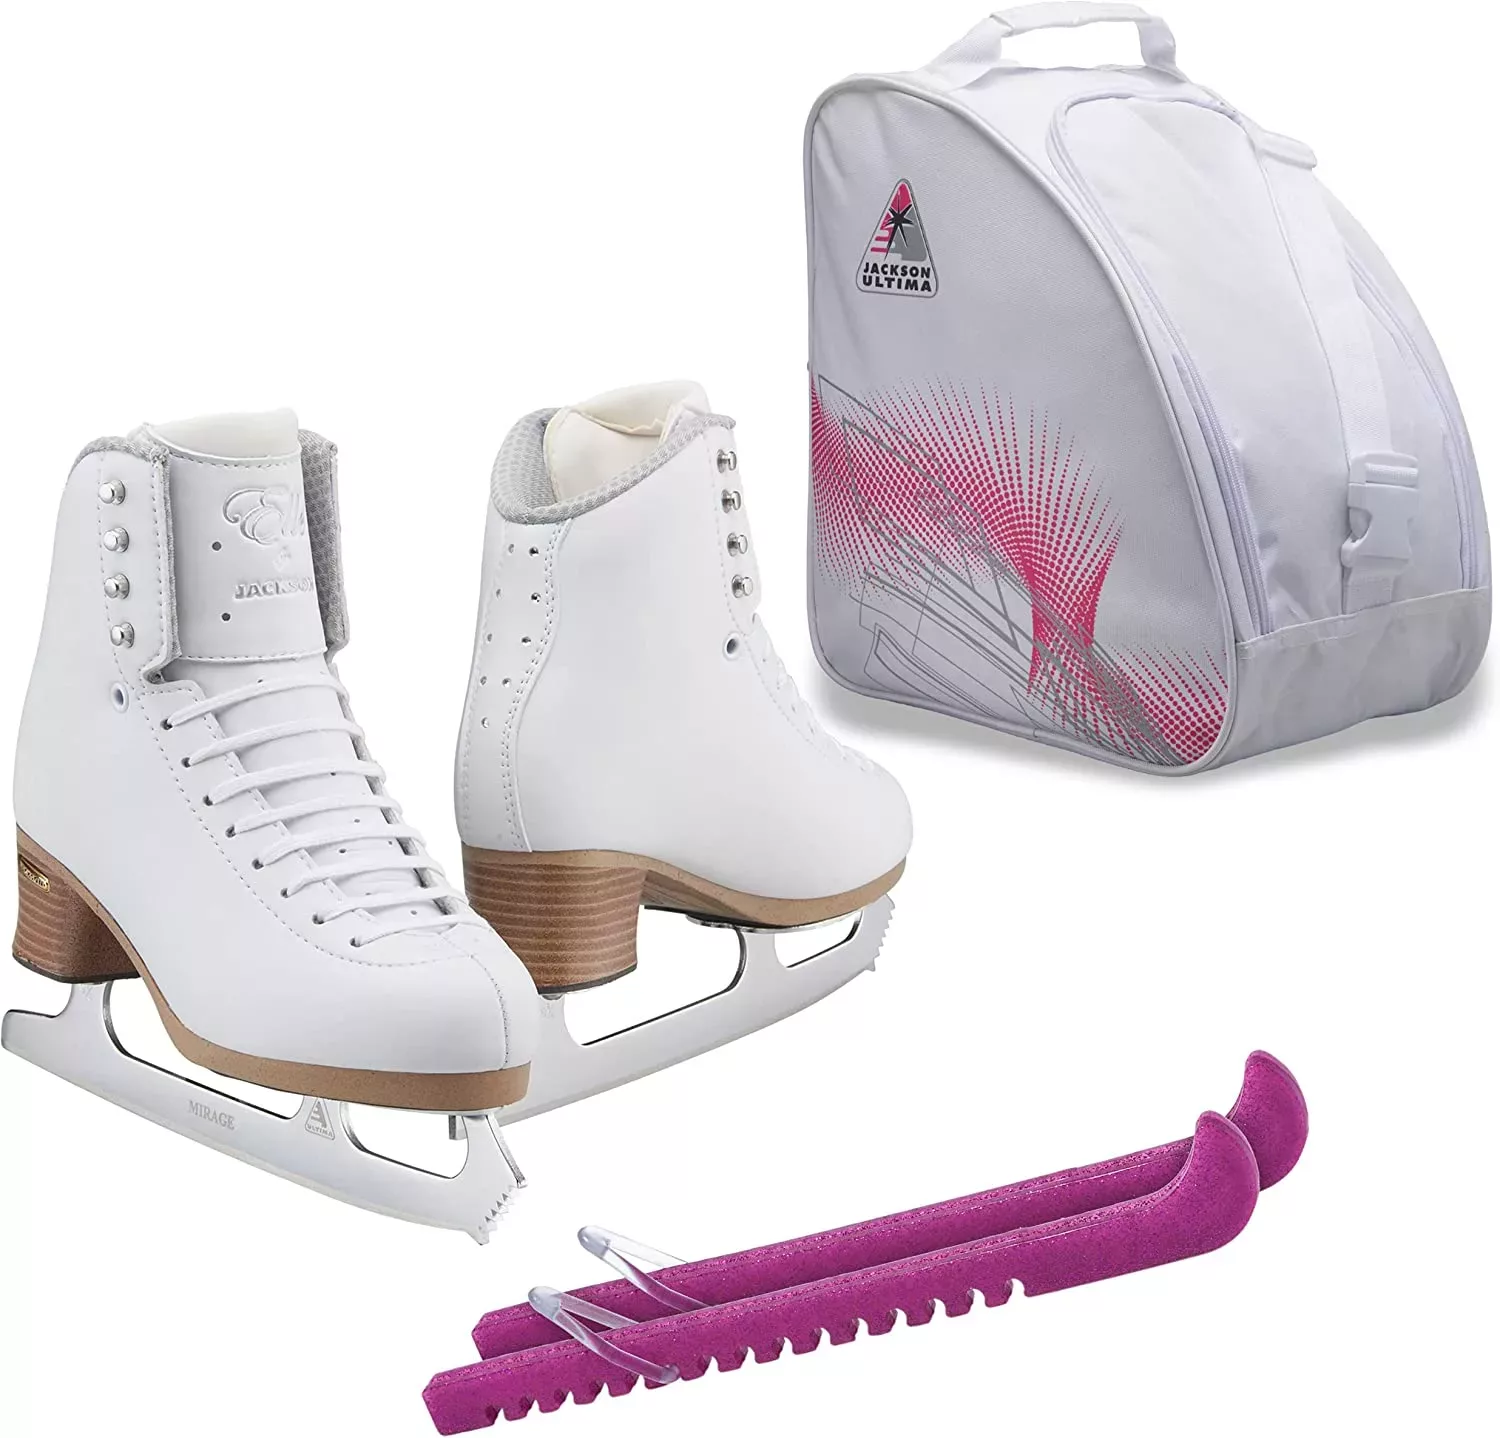 SKATE GURU Jackson Ultima Eiskunstlauf-Schlittschuhe ELLE FS2130 Bundle mit Tasche und Schutzvorrichtungen Bündel